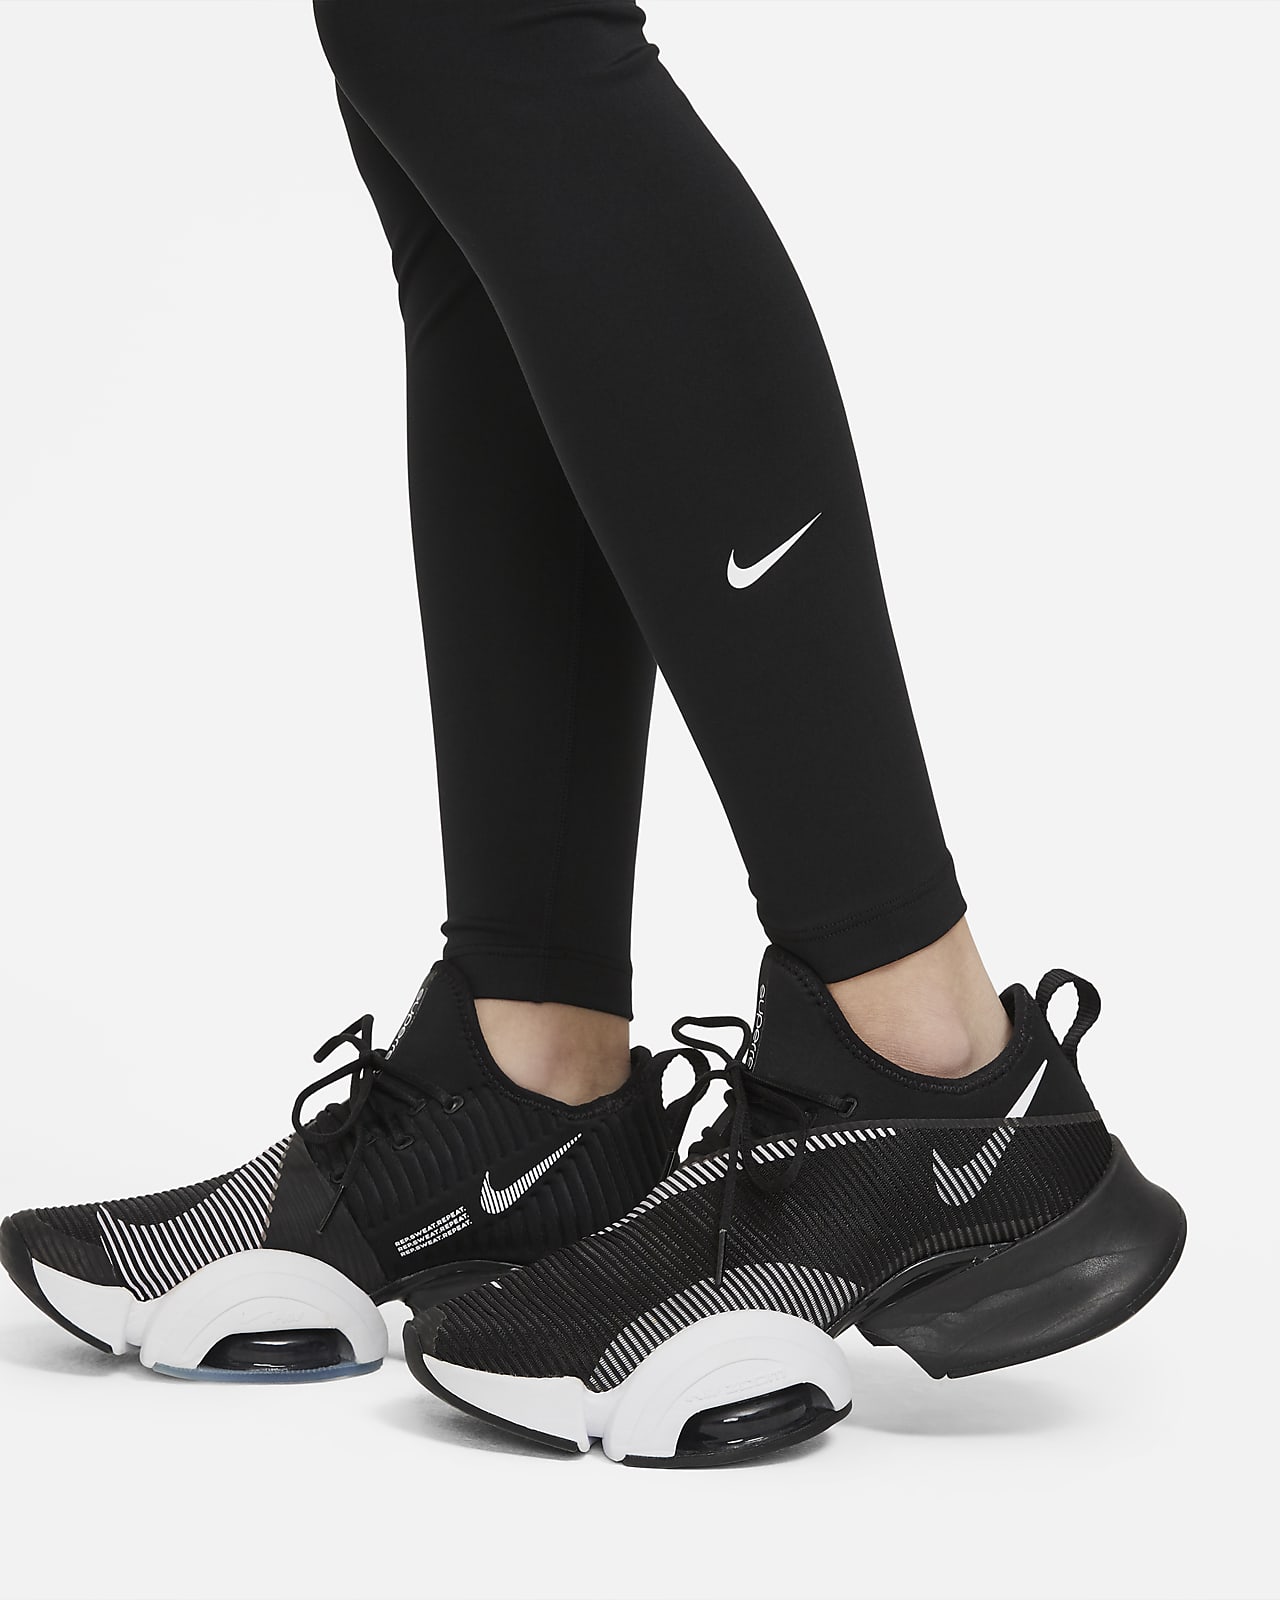 13358円 受注生産品 ナイキ レディース レギンス Women's Nike Dri-Fit One Mid-Rise Camo Leggings - Dark Smoke Grey White